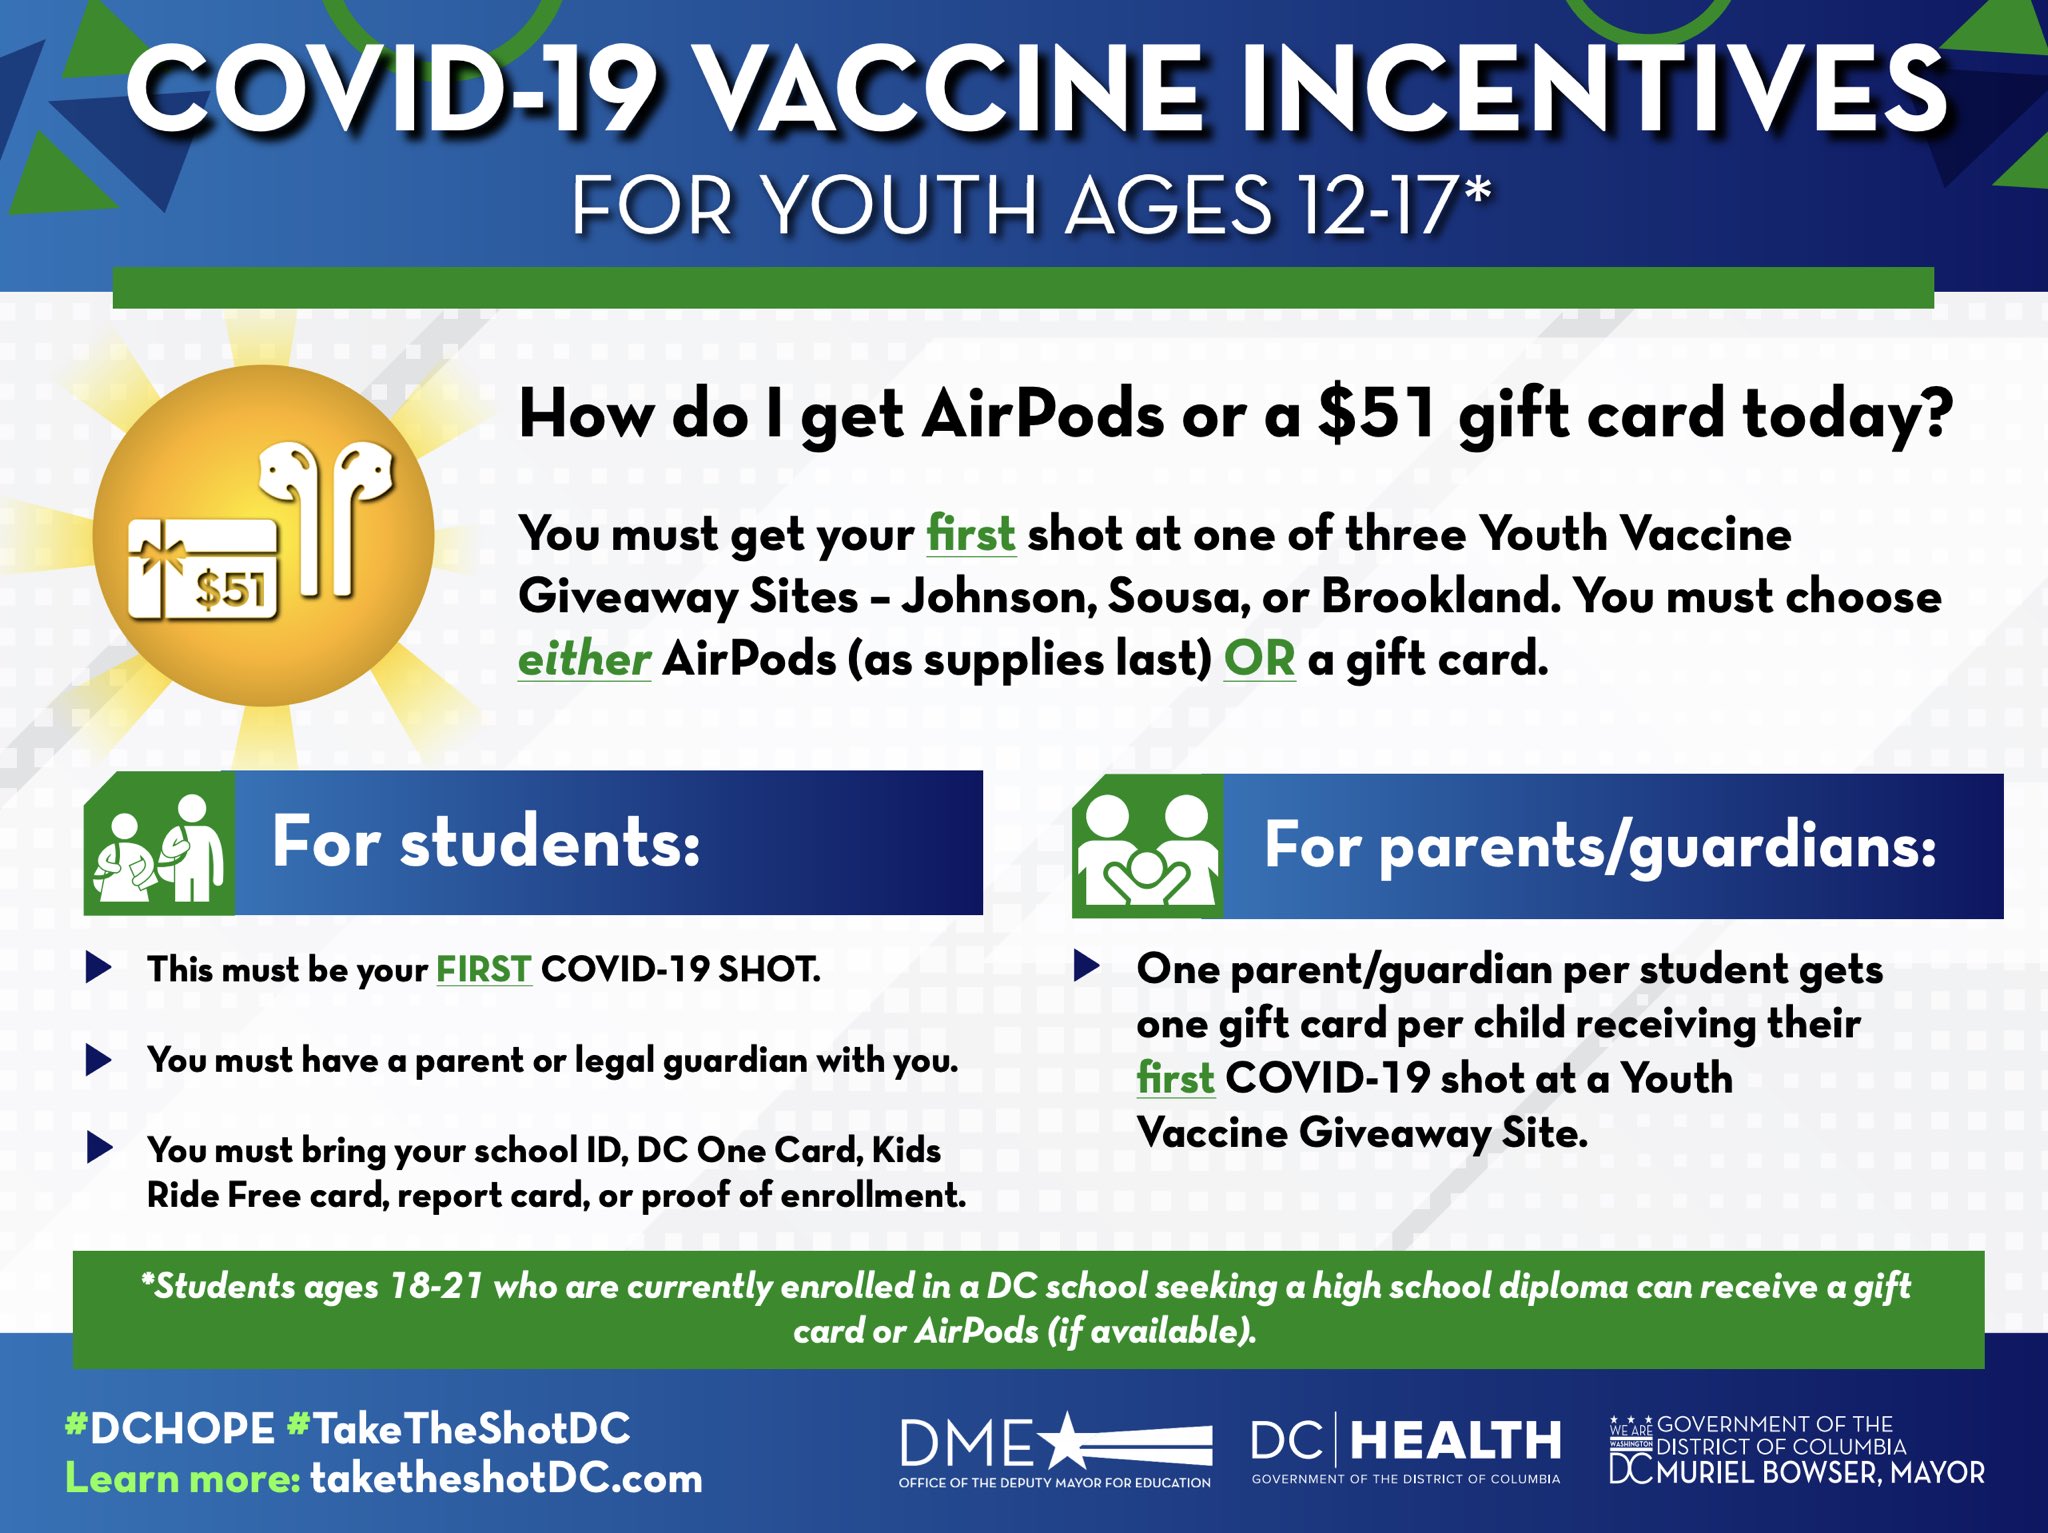 接種 COVID-19 疫苗送 AirPods、禮品卡還能抽 iPad